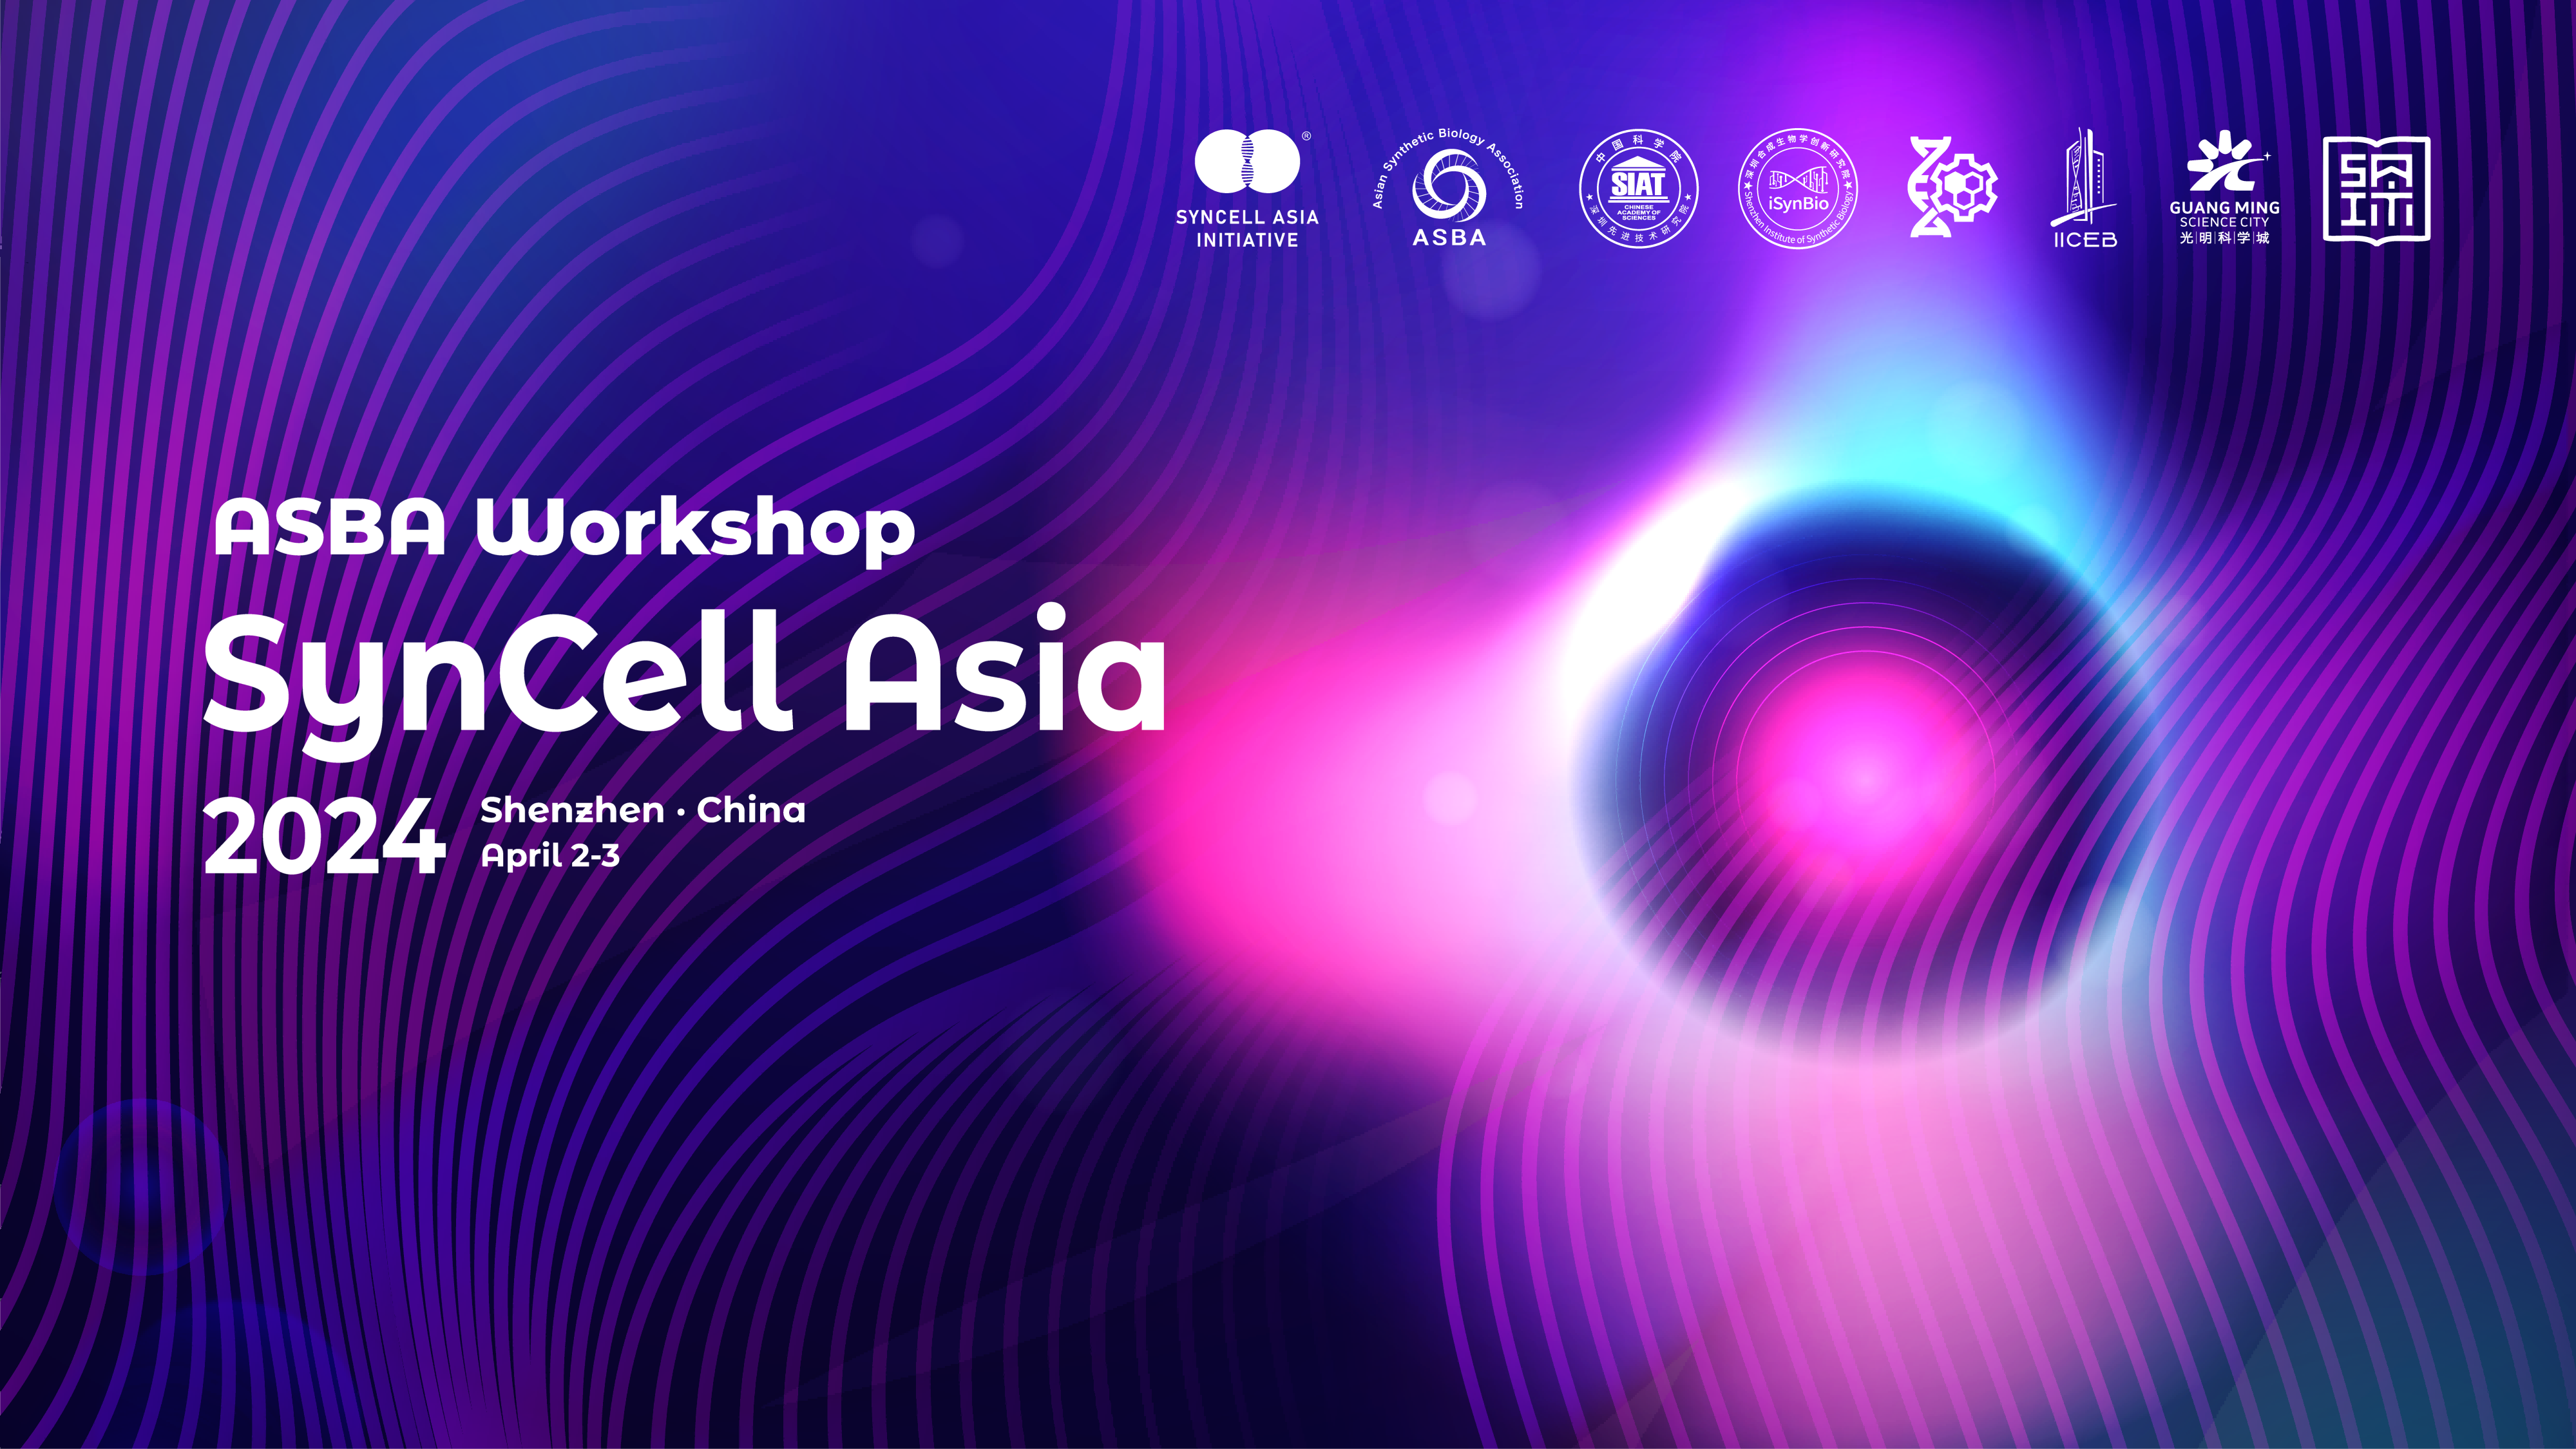 2024 “合成细胞亚洲”研讨会SynCell Asia Workshop将在4月2日于光明科学城召开